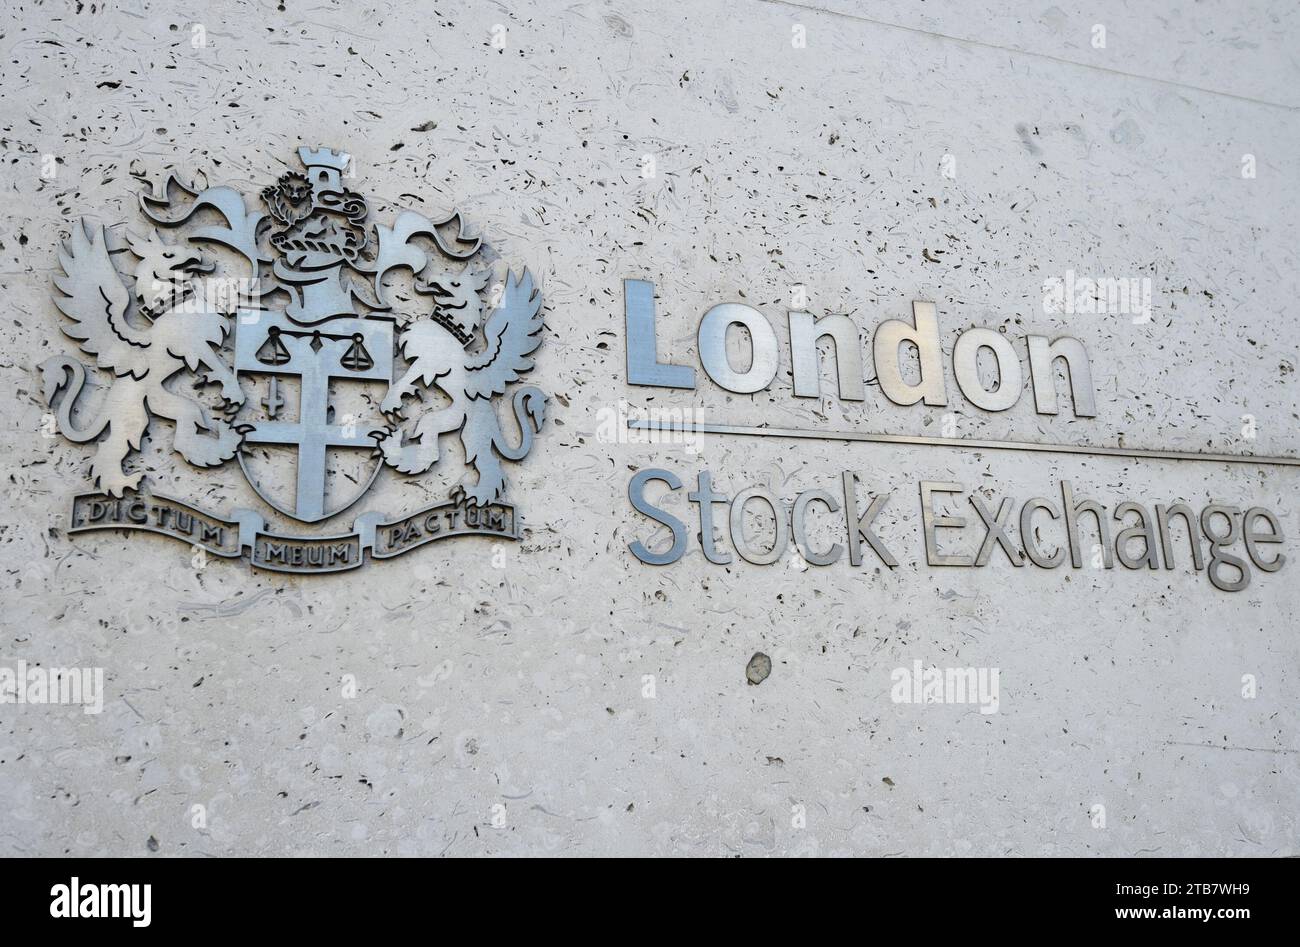 Dateifoto vom 06/18 der Londoner Börse, bei der der Handel von Hunderten von Aktien am Dienstag nach einem weiteren Ausfall der Börse gestoppt wurde. Am Vormittag gab sie an, dass sie nur nach einem Vorfall FTSE 100-, FTSE 250- und IOB-Aktien handeln könne. Die Börse sagte, dass sie das Problem untersuchen würde, was sich auf ihr Handels- und Informationssystem auswirkt.Ausgabedatum: Dienstag, 5. Dezember 2023. Stockfoto